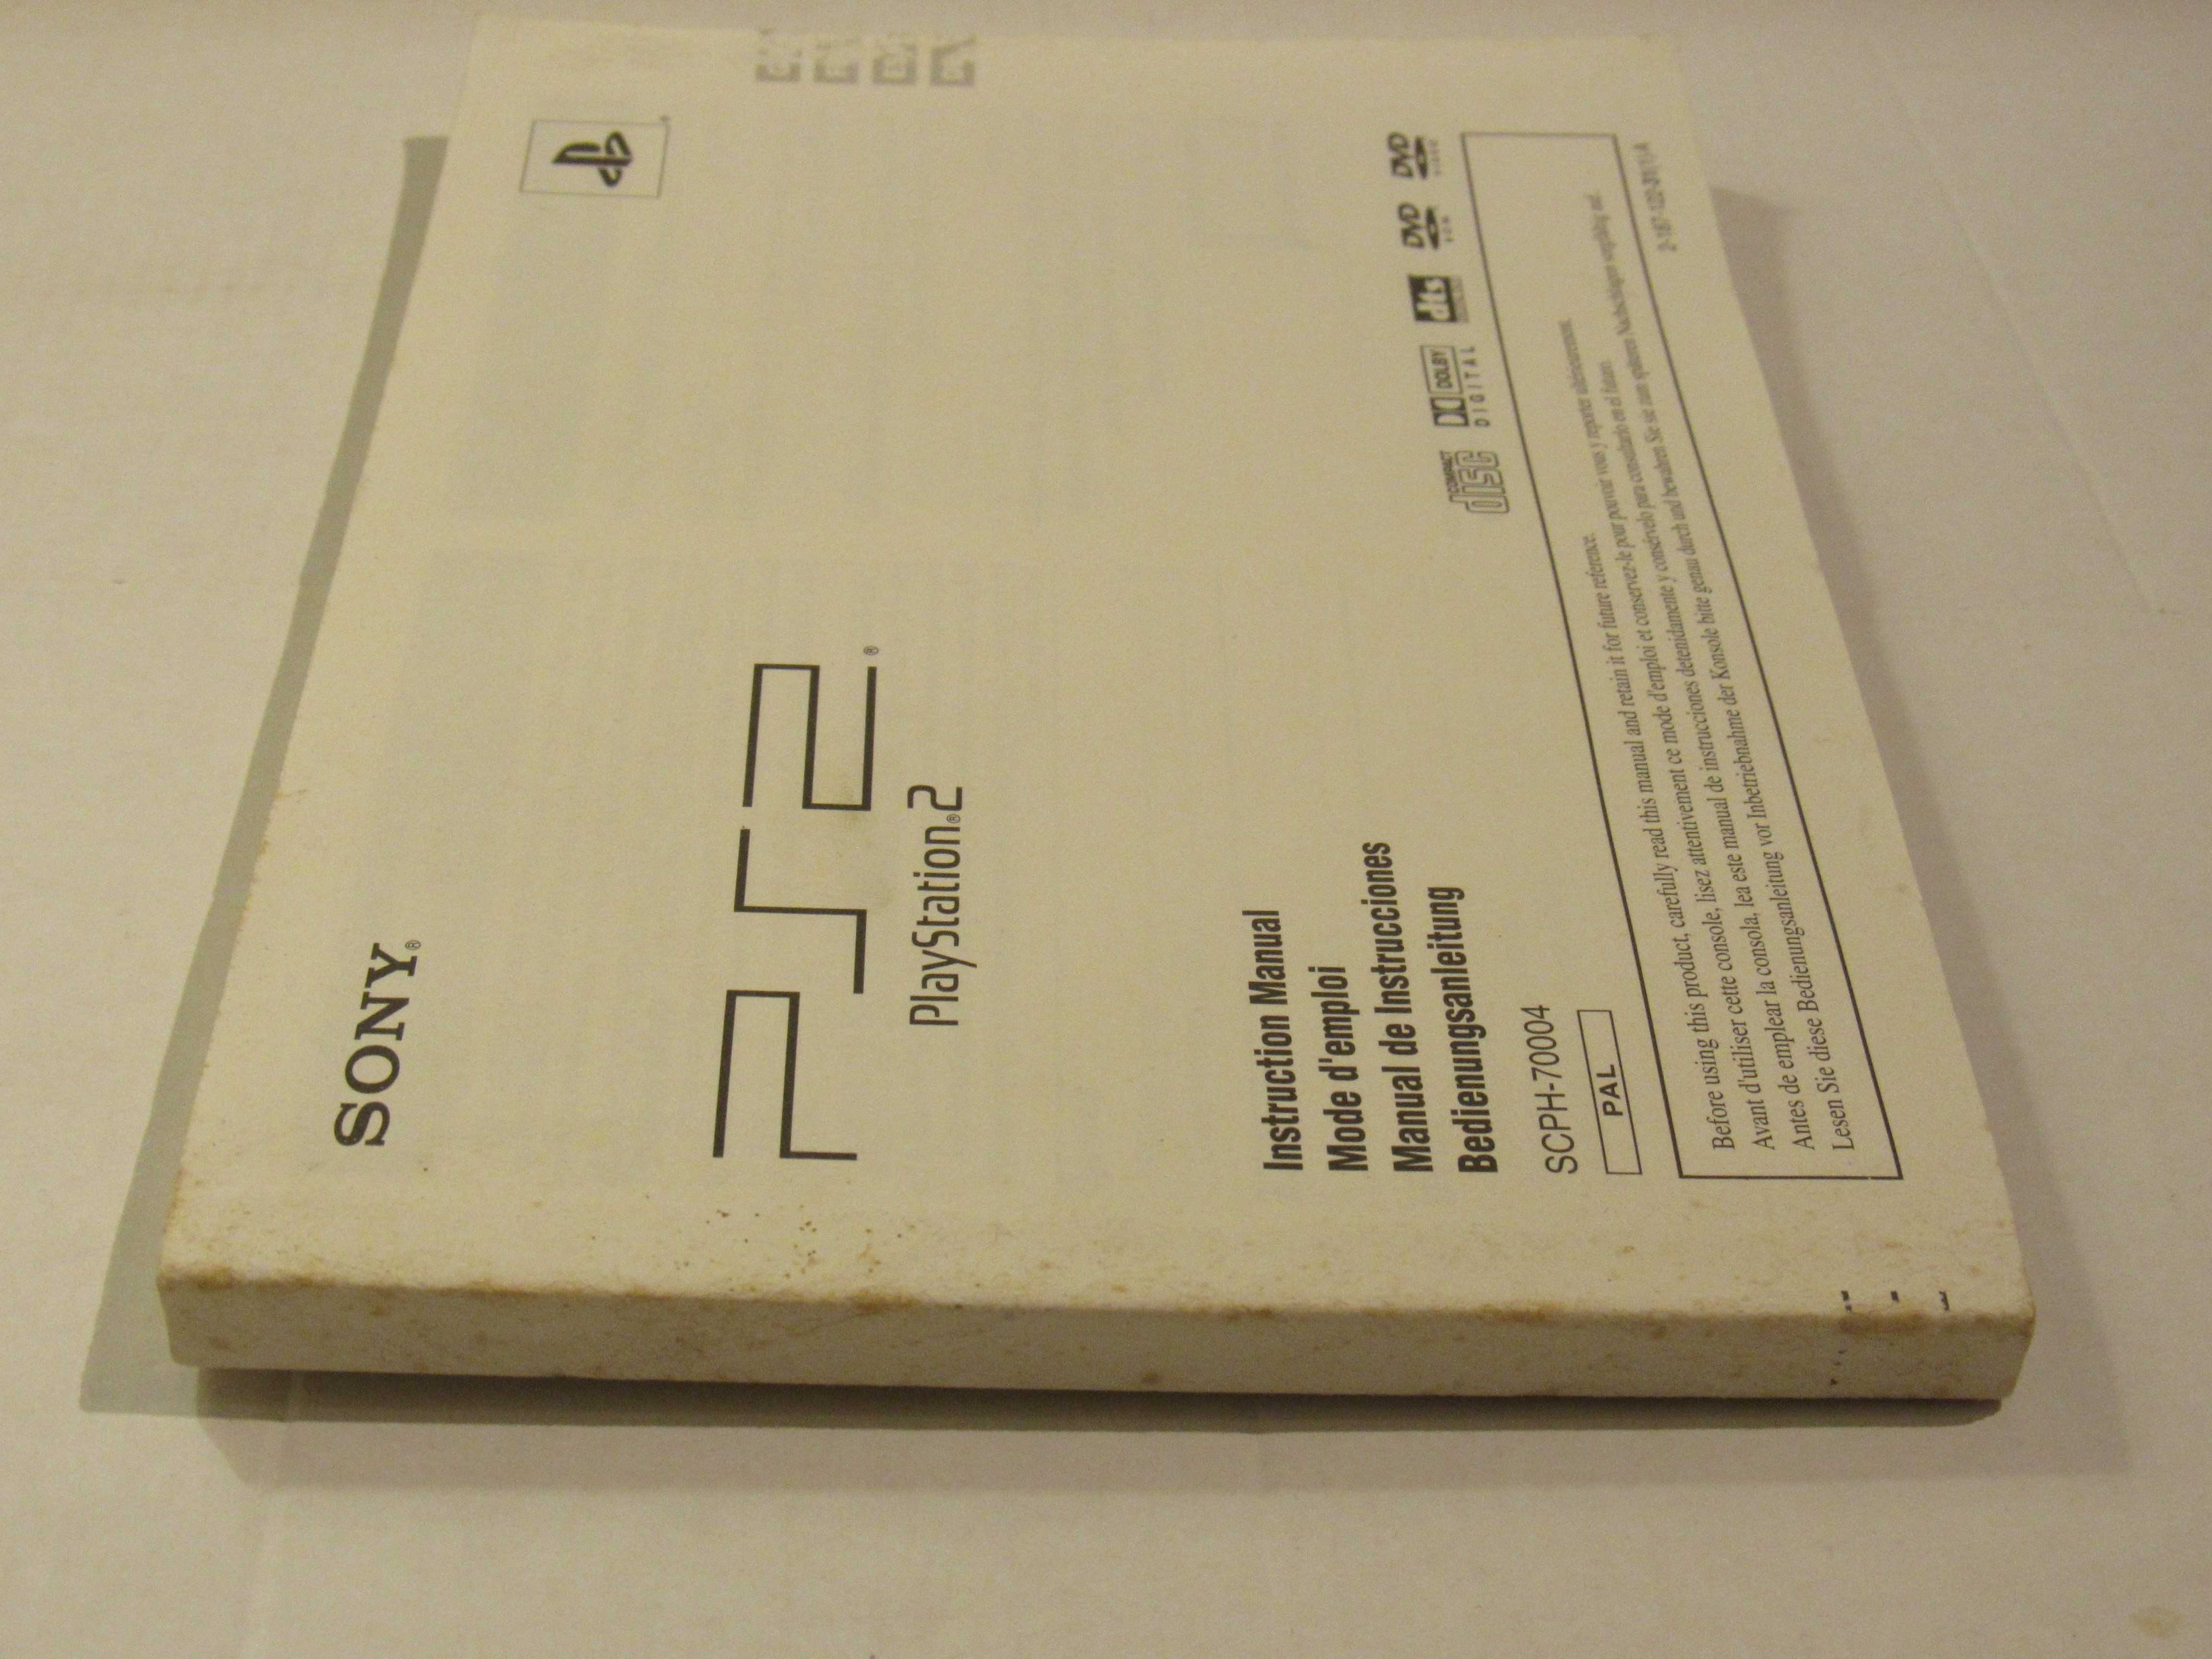 Manual original Playstation 2 PS2 SCPH-70004 slim